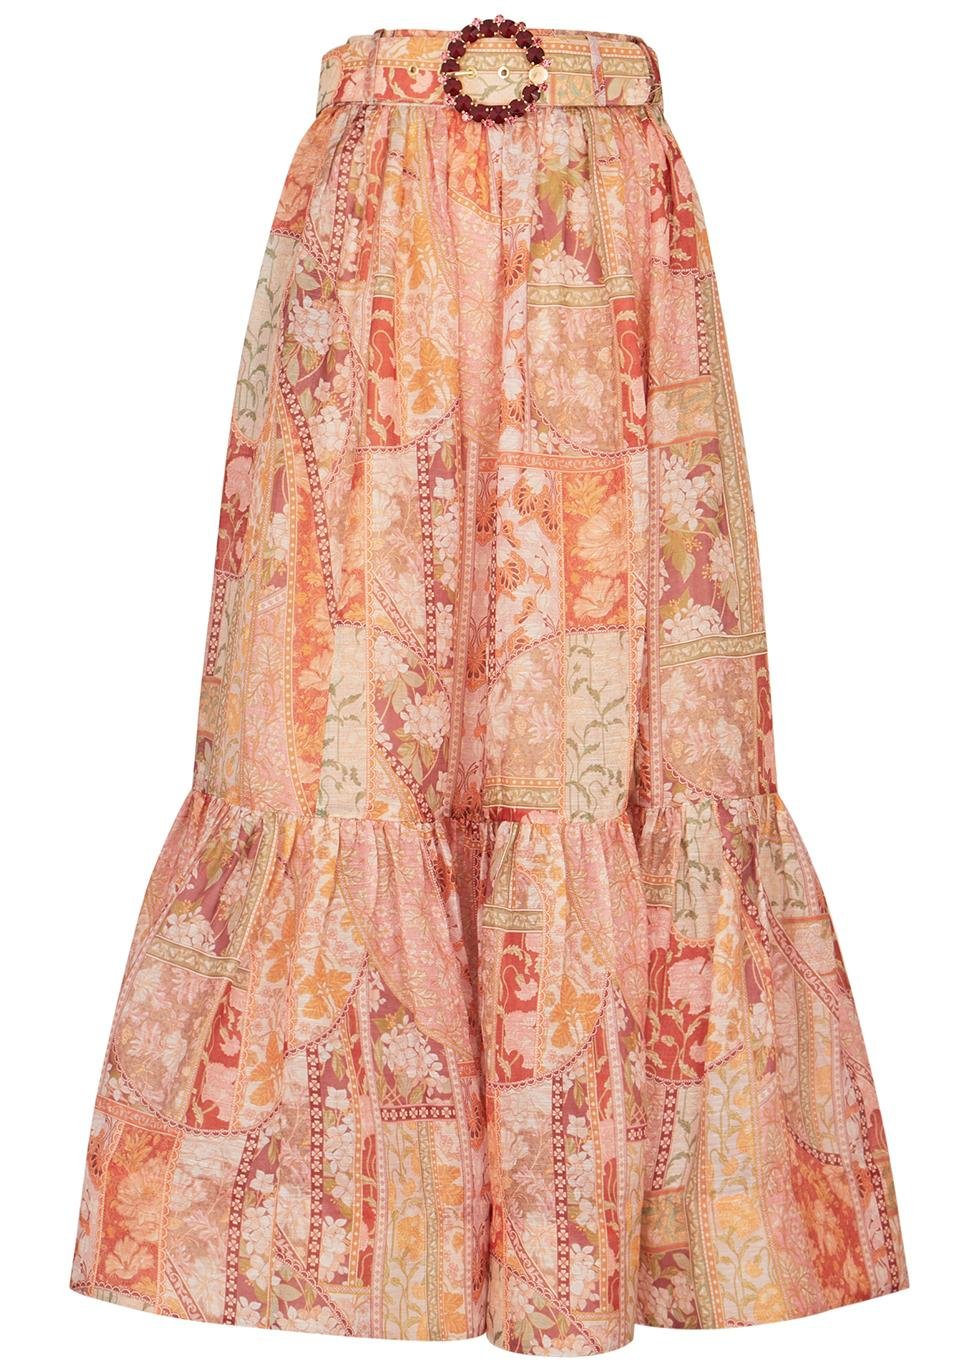 Kaleidoscope printed linen-blend skirt by ZIMMERMANN